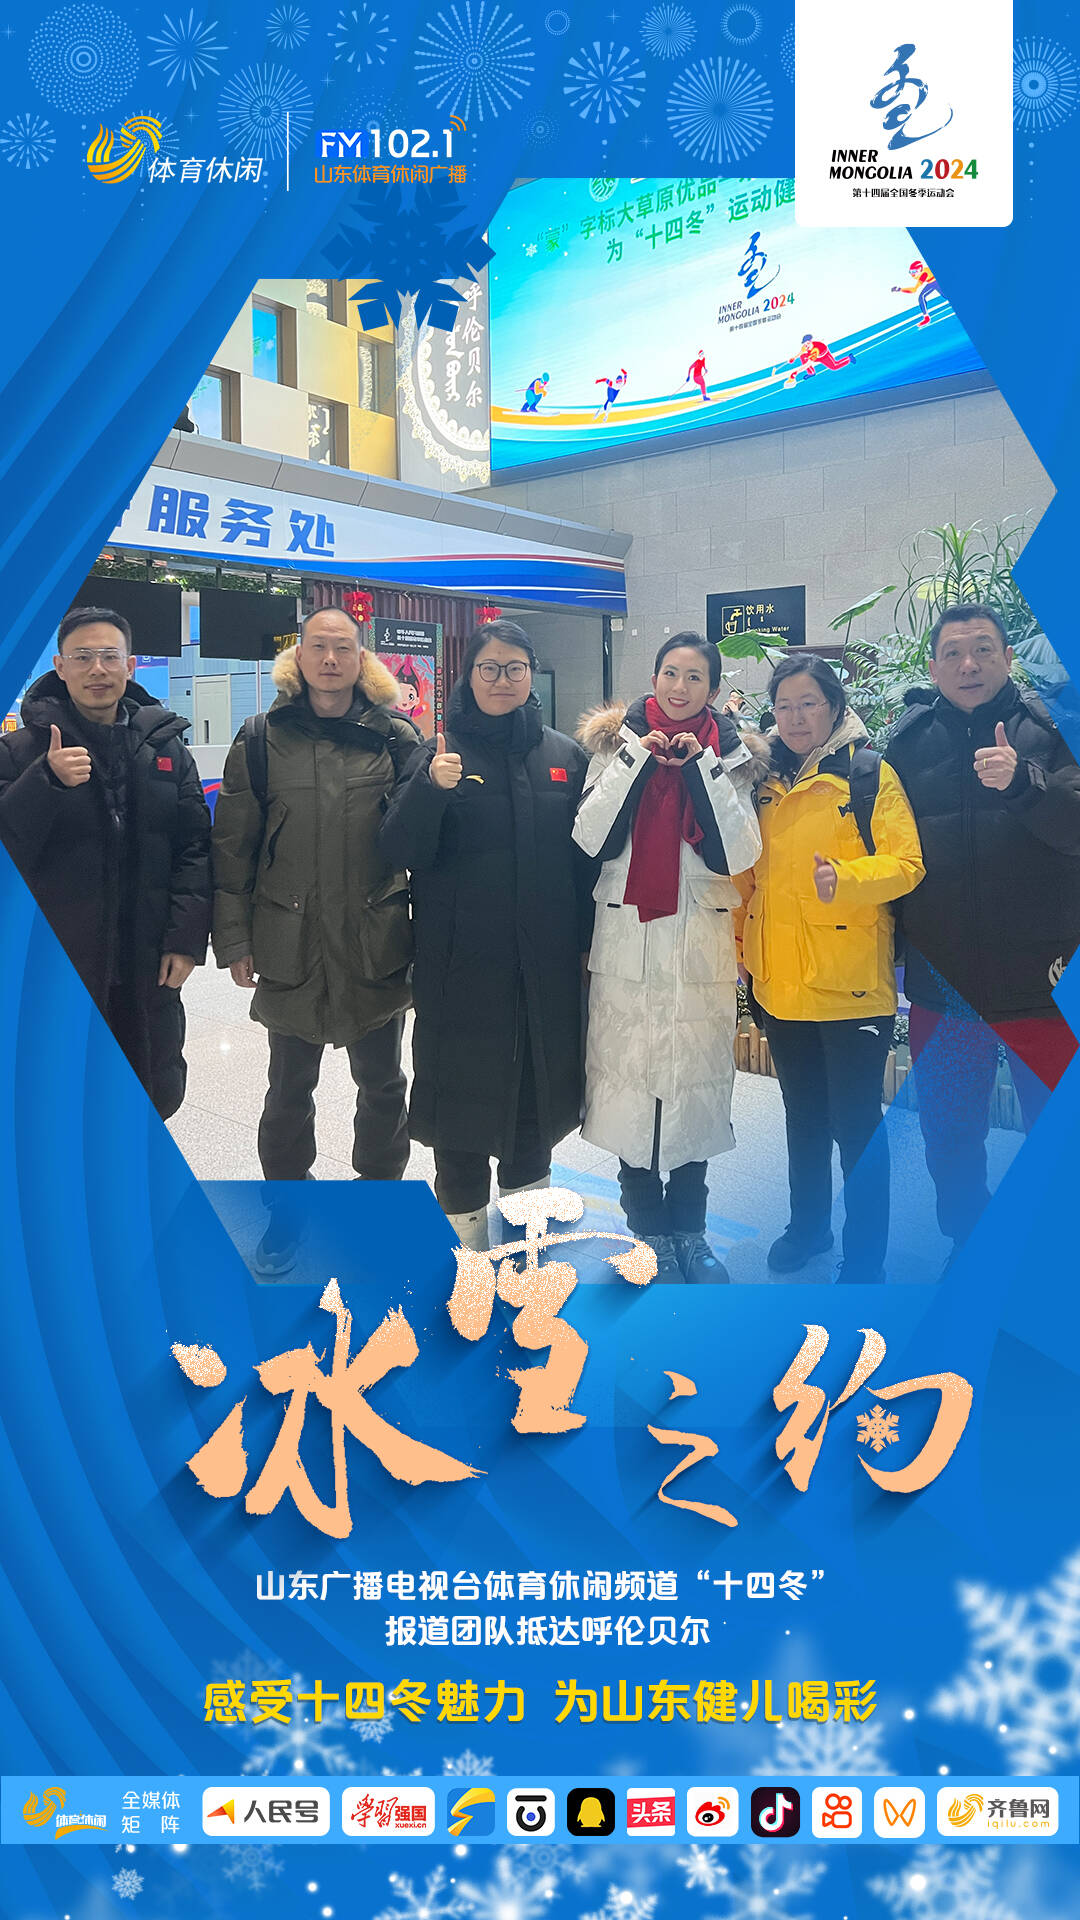 山东广播电视台体育休闲频道“十四冬”报道团队抵达呼伦贝尔